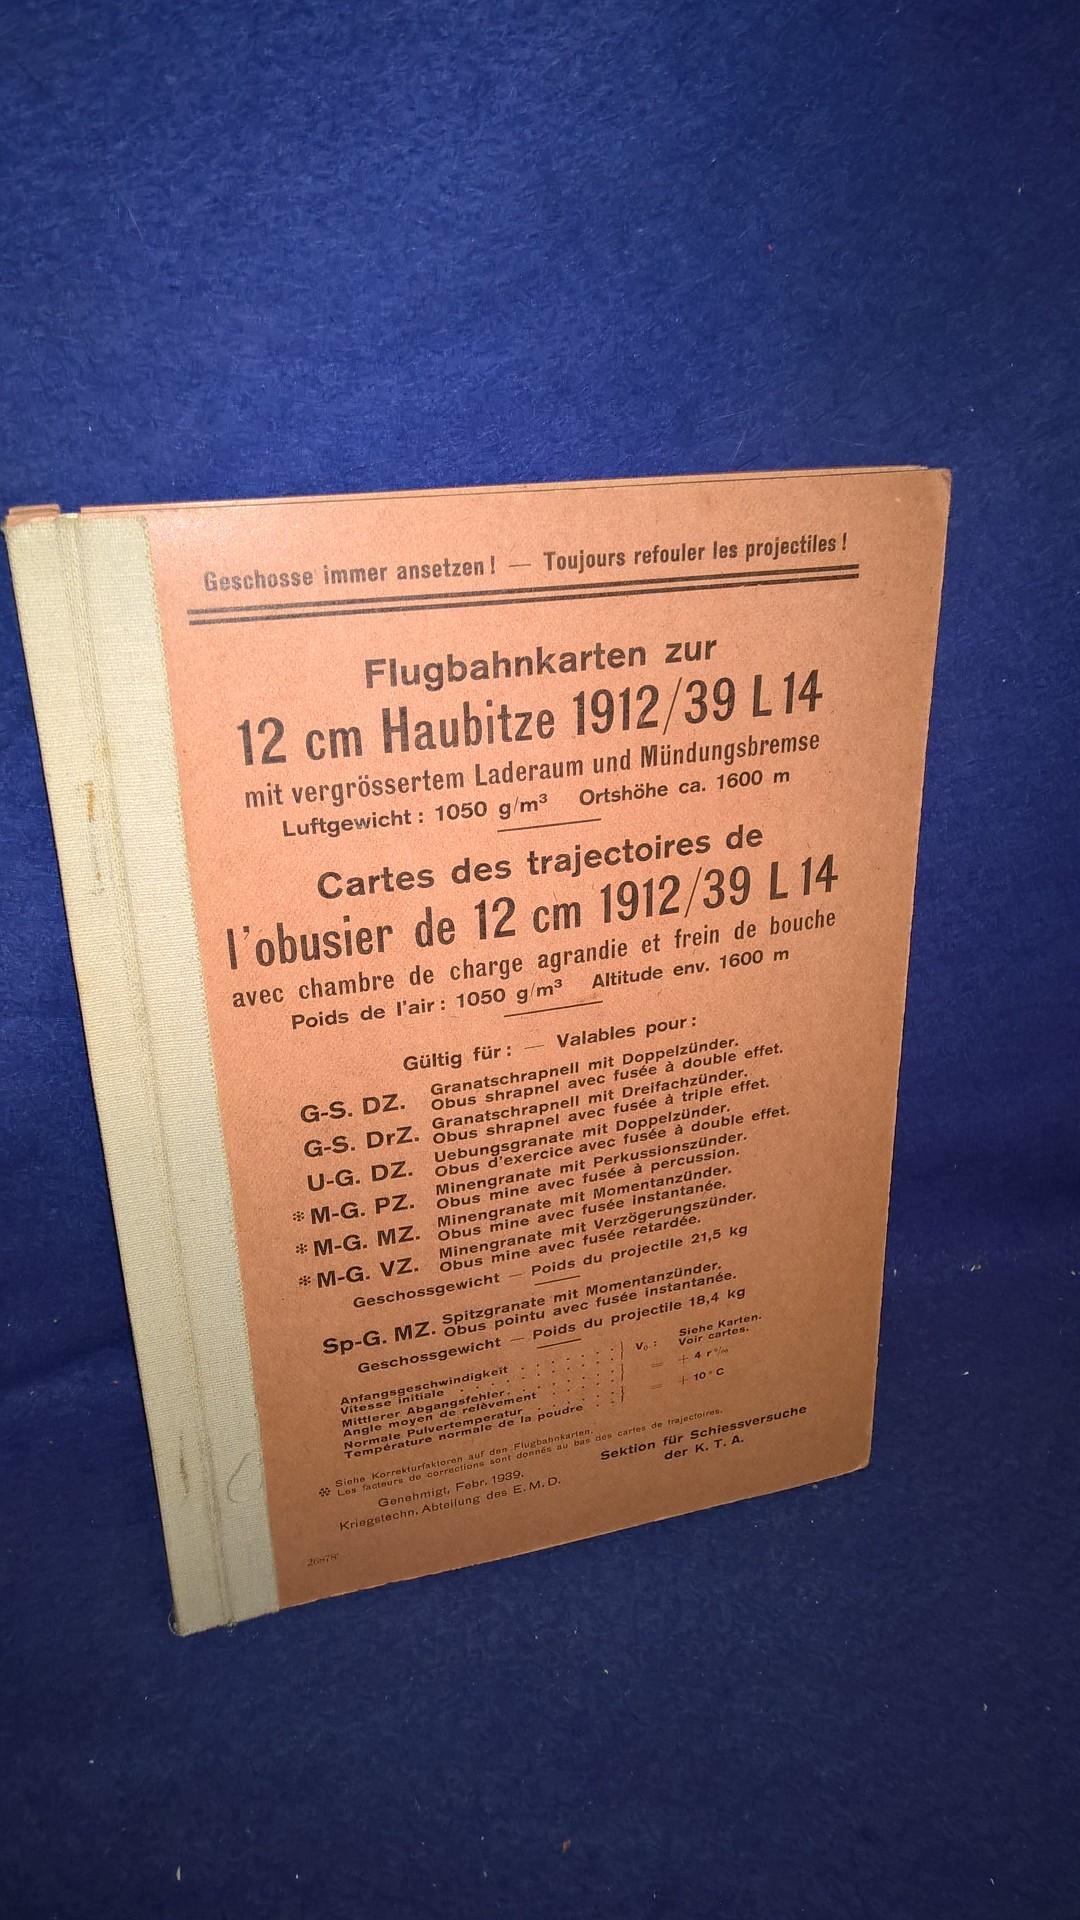 Flugbahnkarten zur 12cm Haubitze 1912/39 L 14 mit vergrössertem Laderaum und Mündungsbremse (Krupp-Geschütz).-Selten!